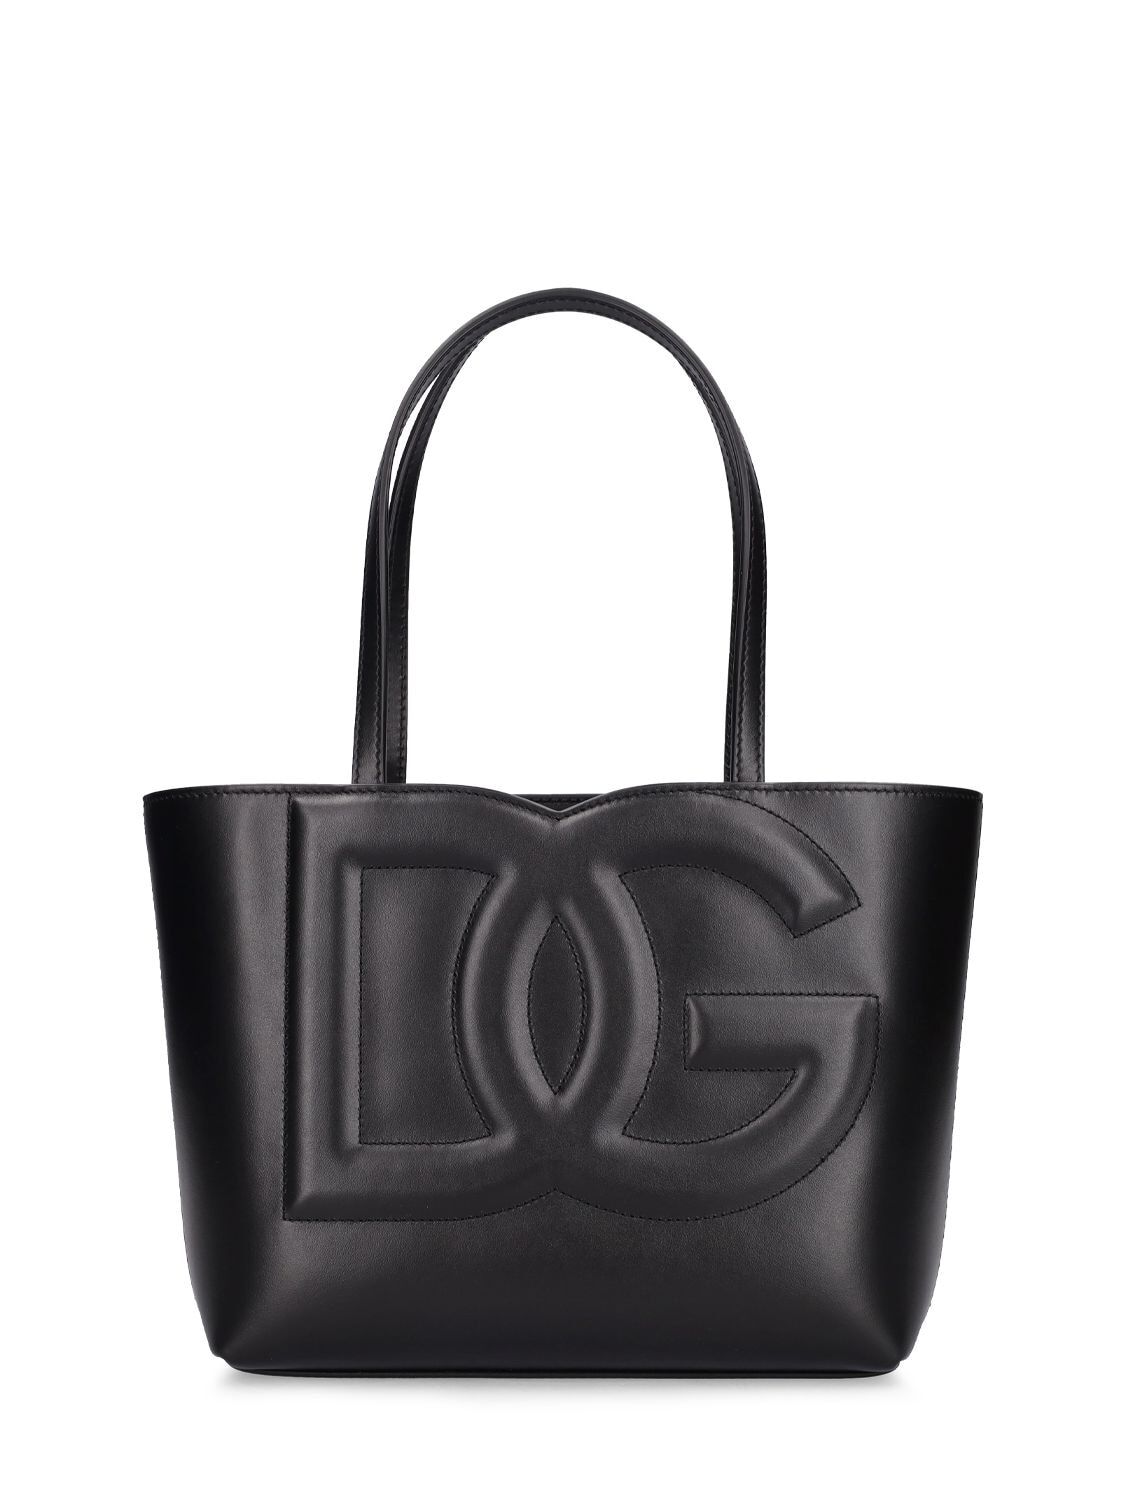 DOLCE & GABBANA Logo Leather Tote Bag in black